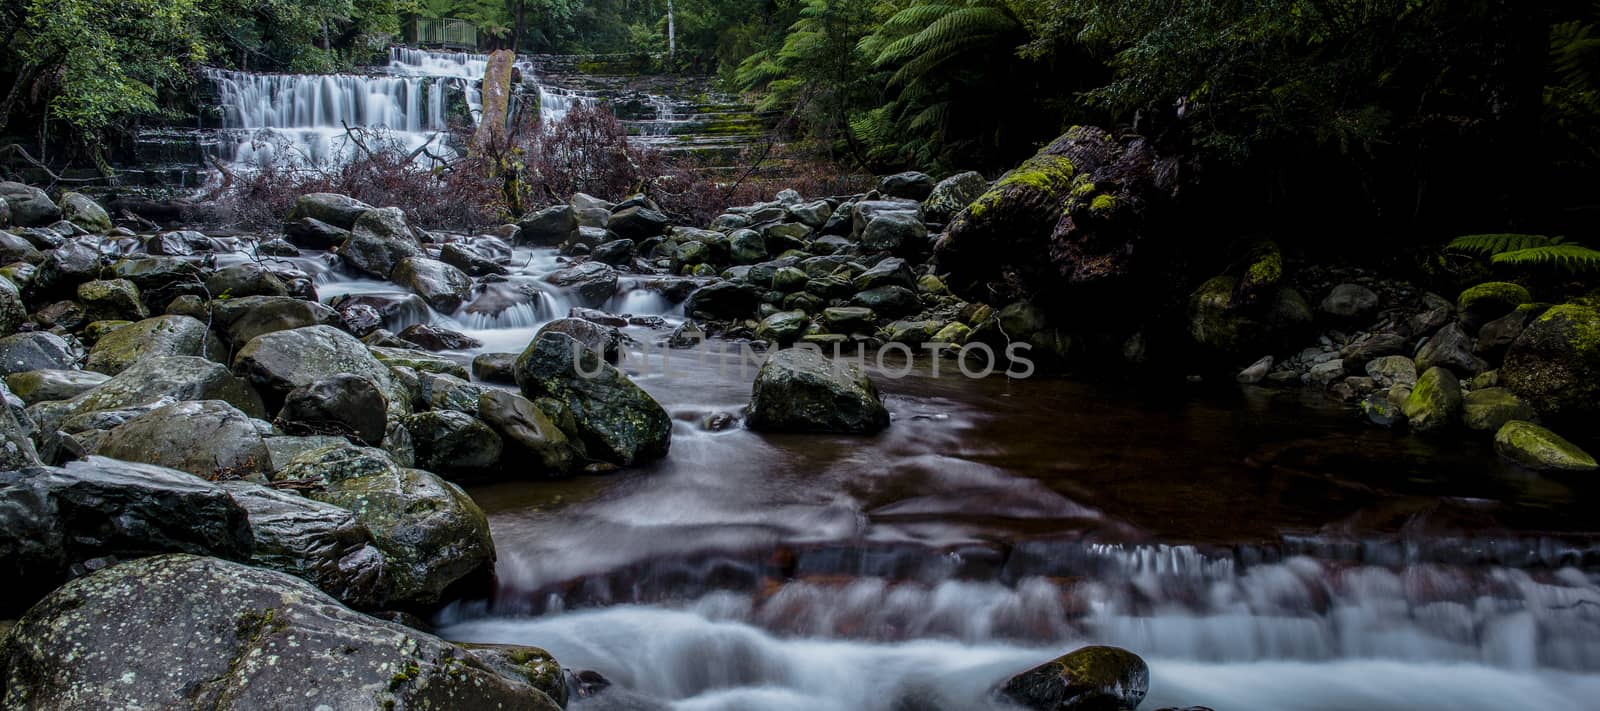 Liffey Falls in the Midlands Region, Tasmania by artistrobd